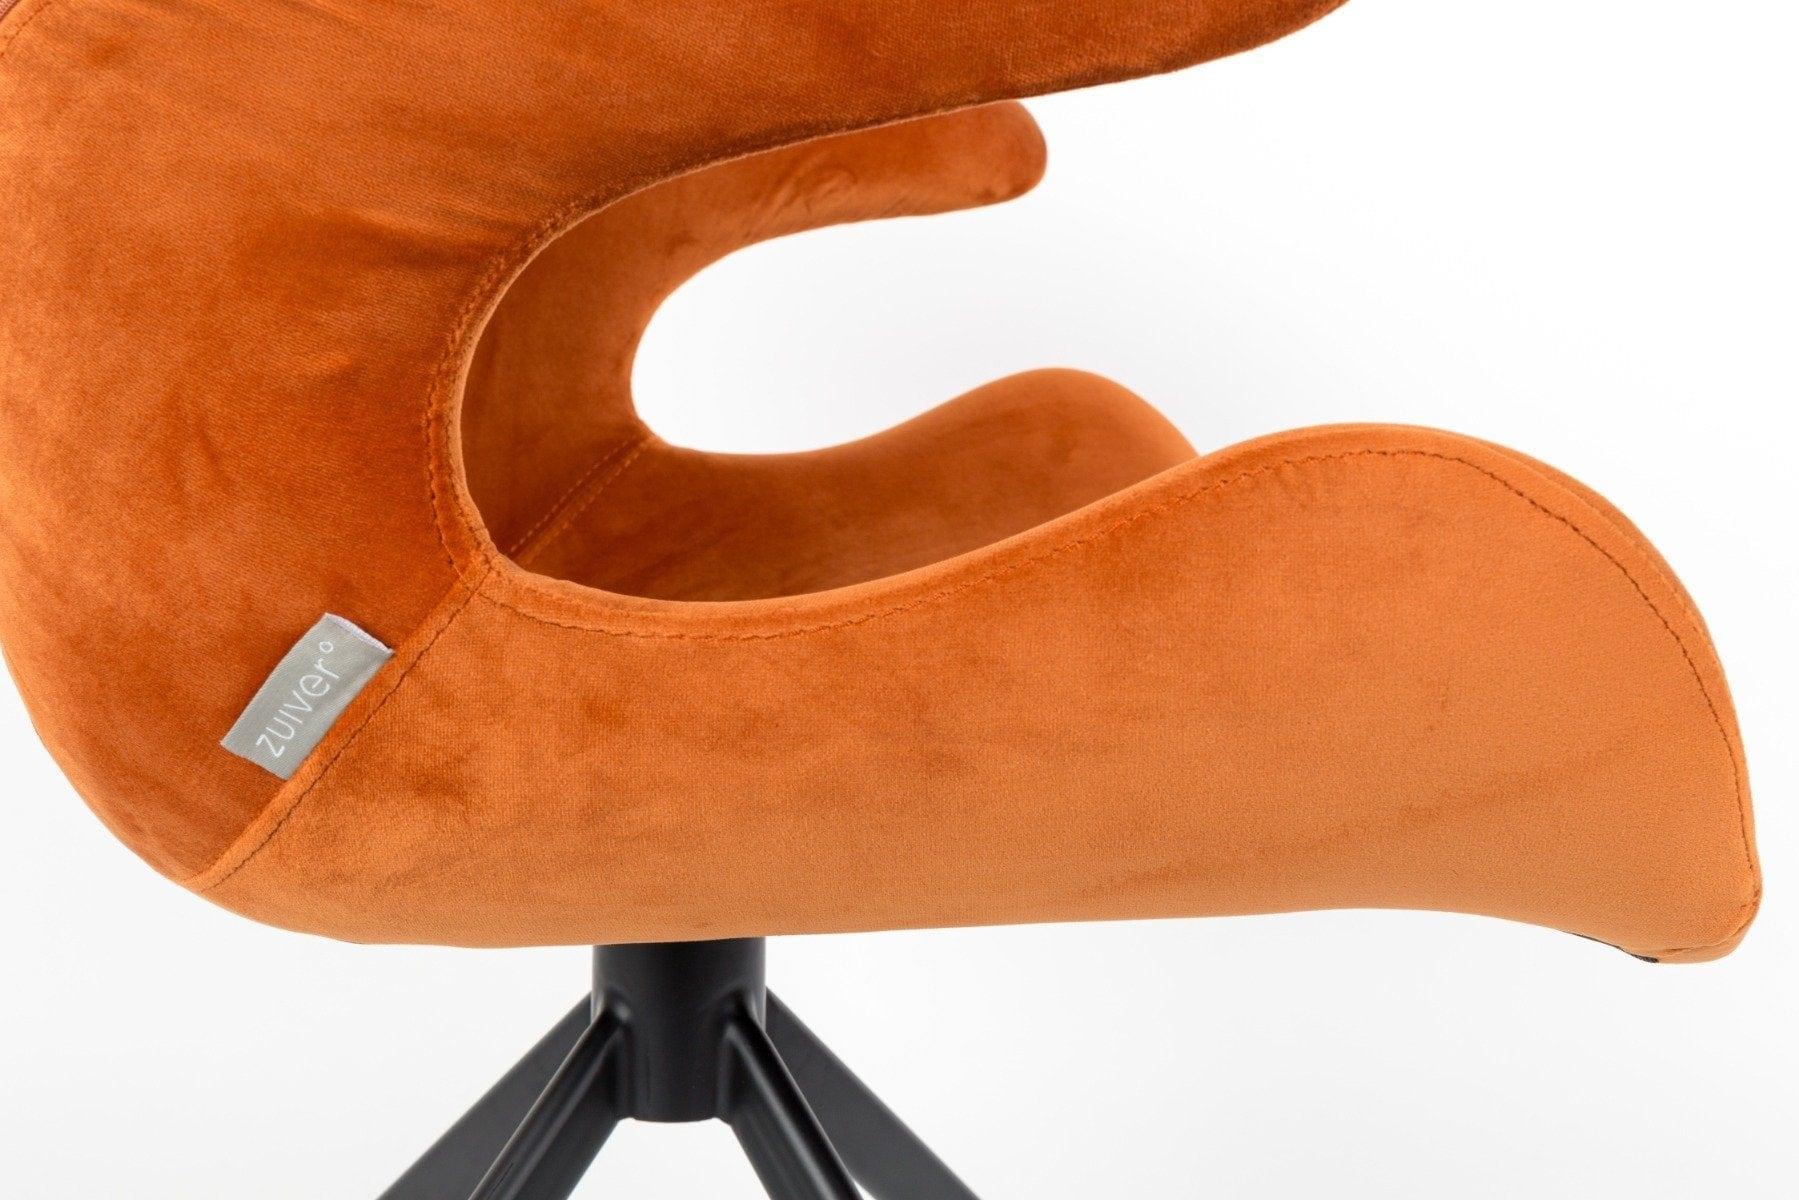 Fotel MIA pomarańczowy Zuiver    Eye on Design